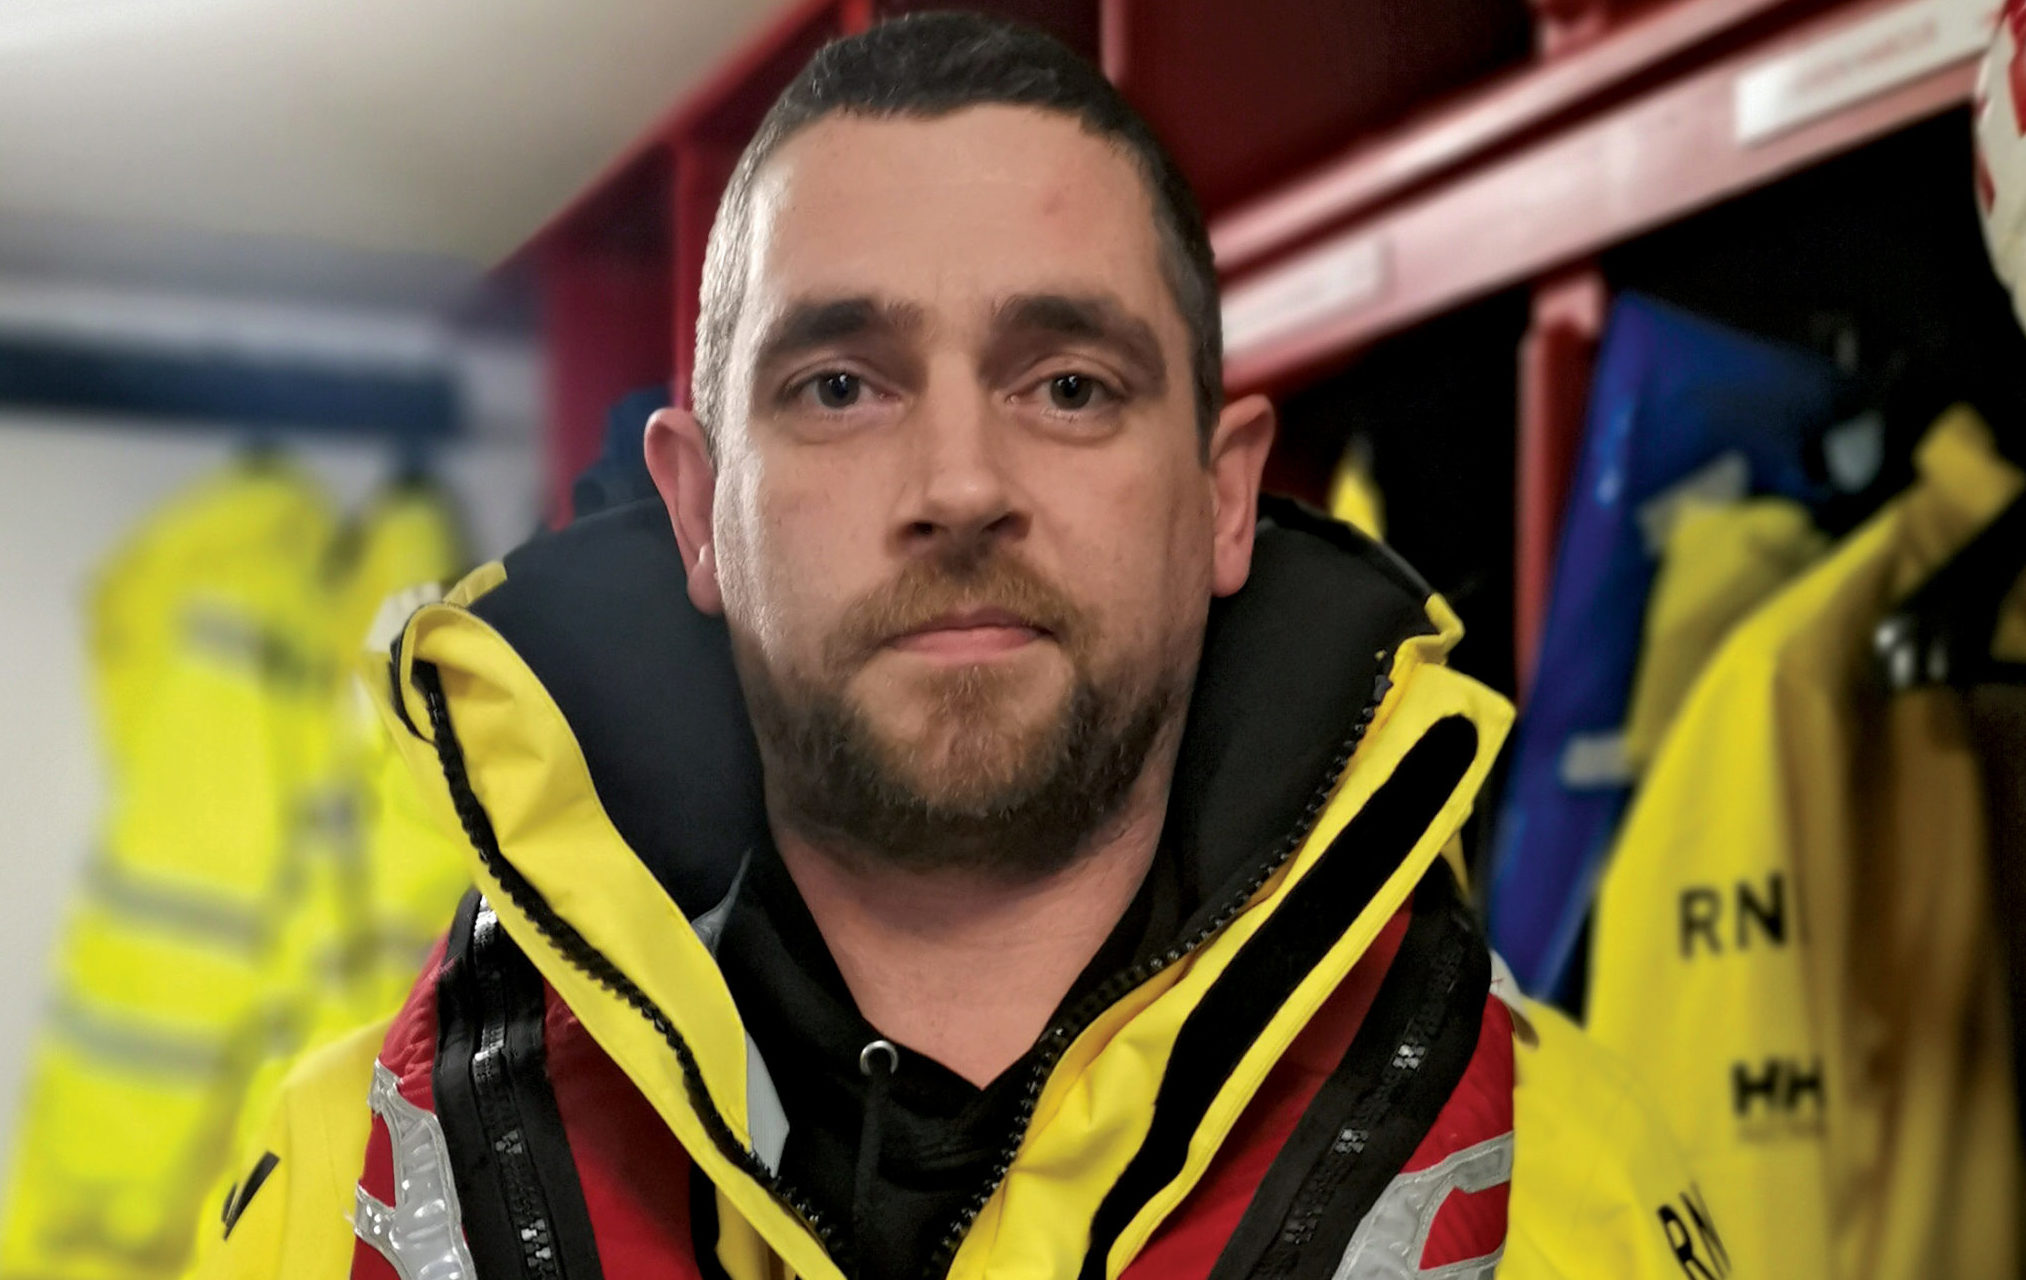 Lifeboatman Darren Harcus